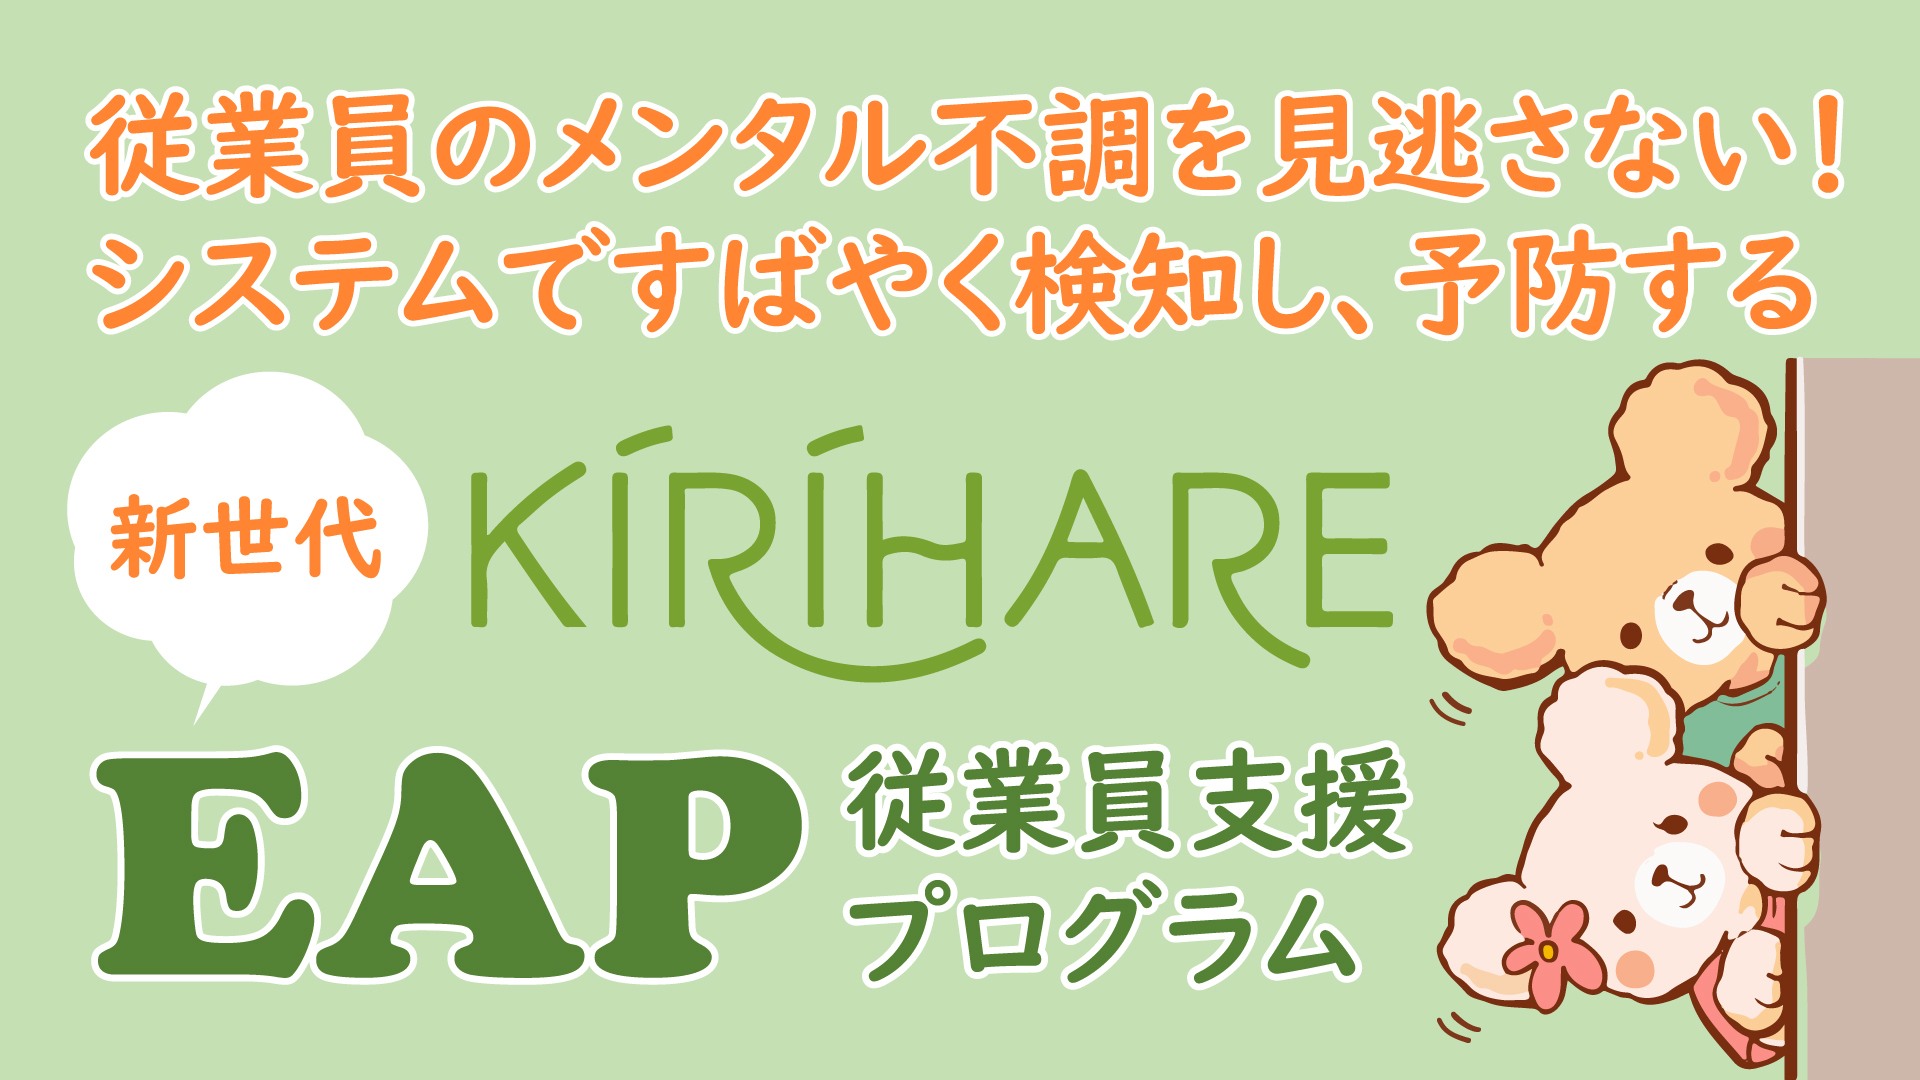 中小企業向けメンタルヘルスケアツールが補助金交付対象
　『KIRIHARE EAP』が「IT導入補助金2021」の認定を取得